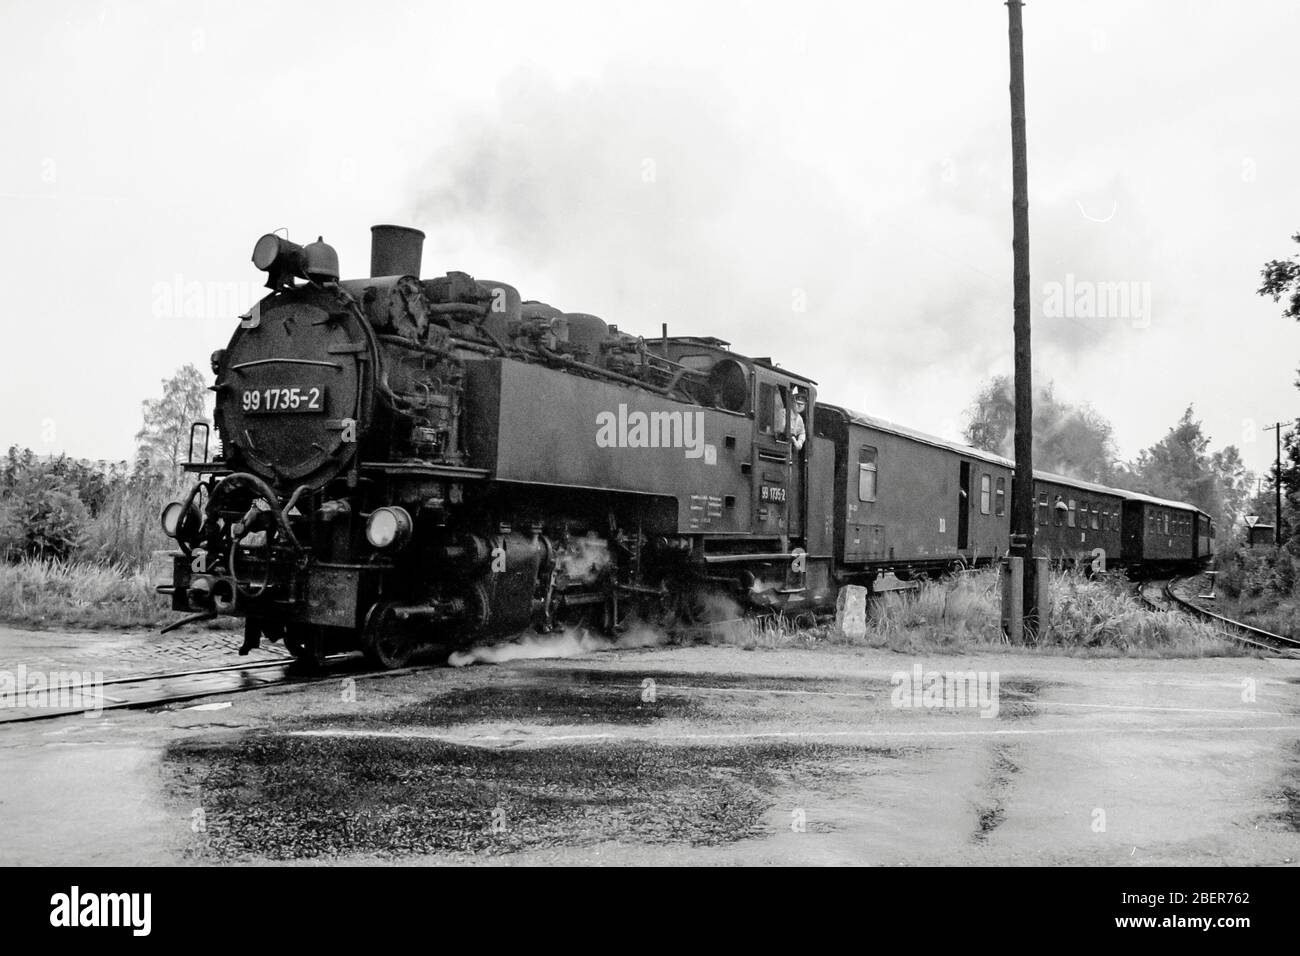 Un train à vapeur sur le chemin de fer étroit Zittau en 1990 Banque D'Images